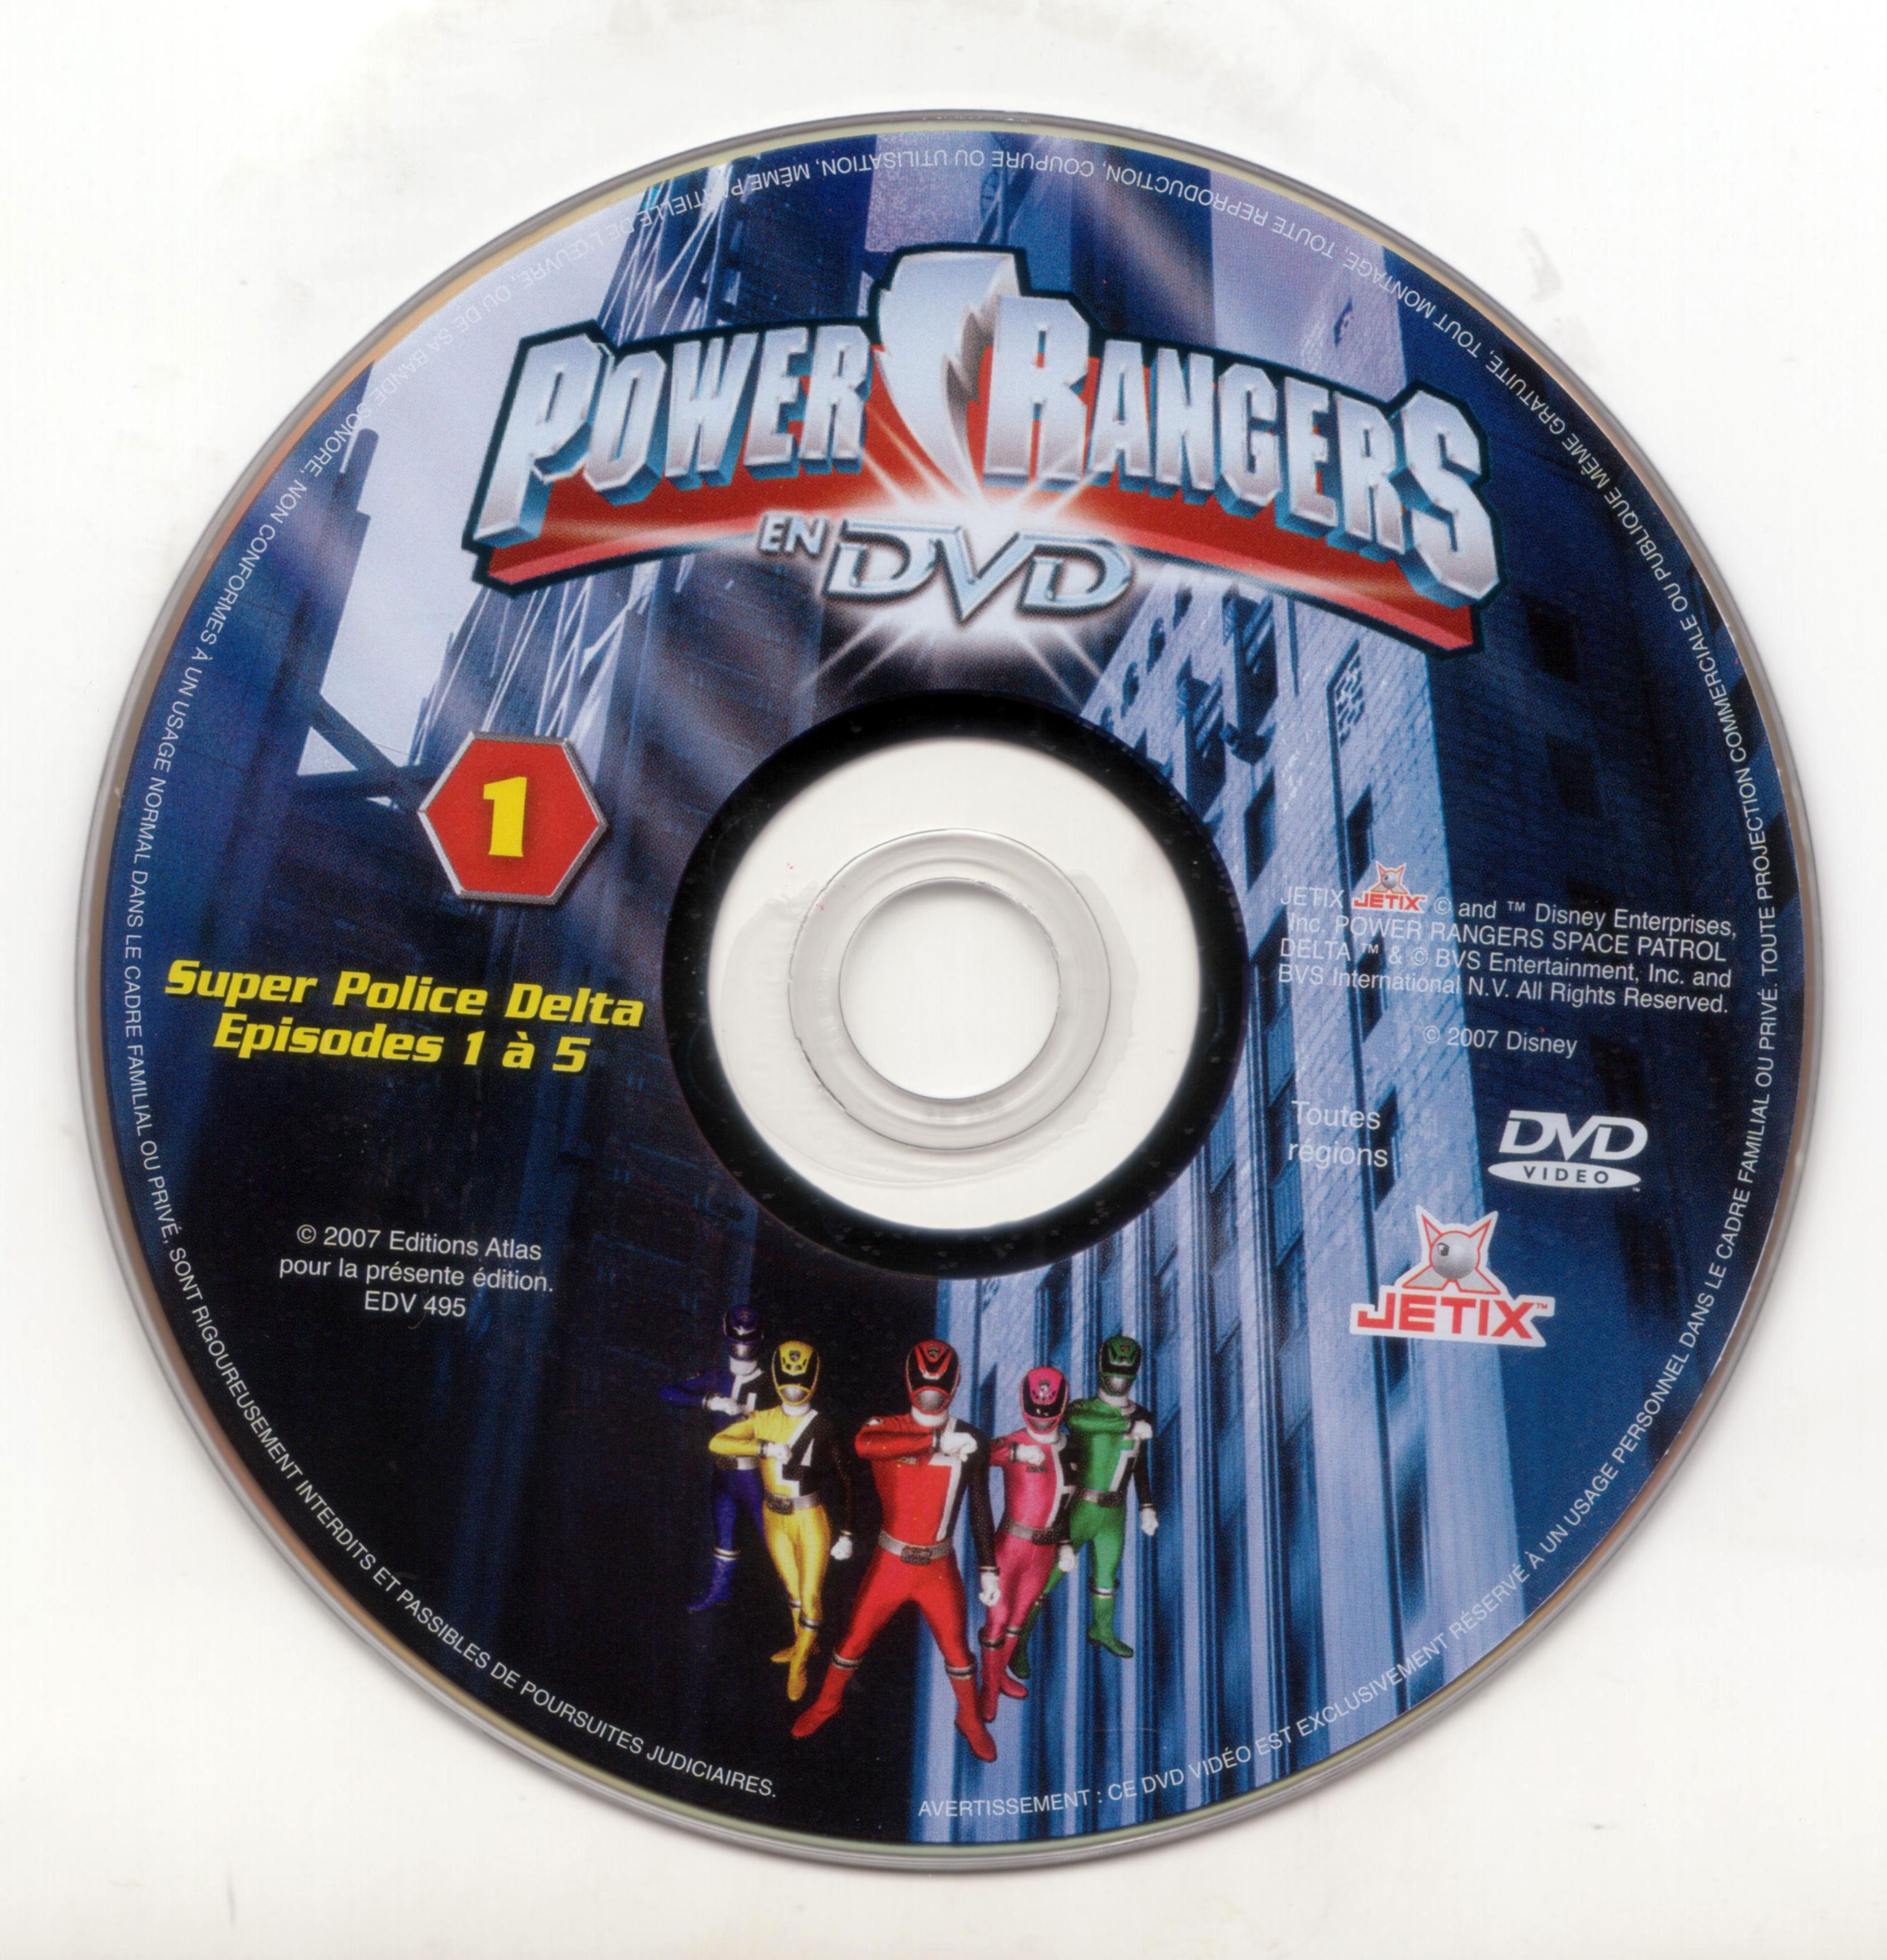 Power rangers DVD 1 (Ed Atlas)